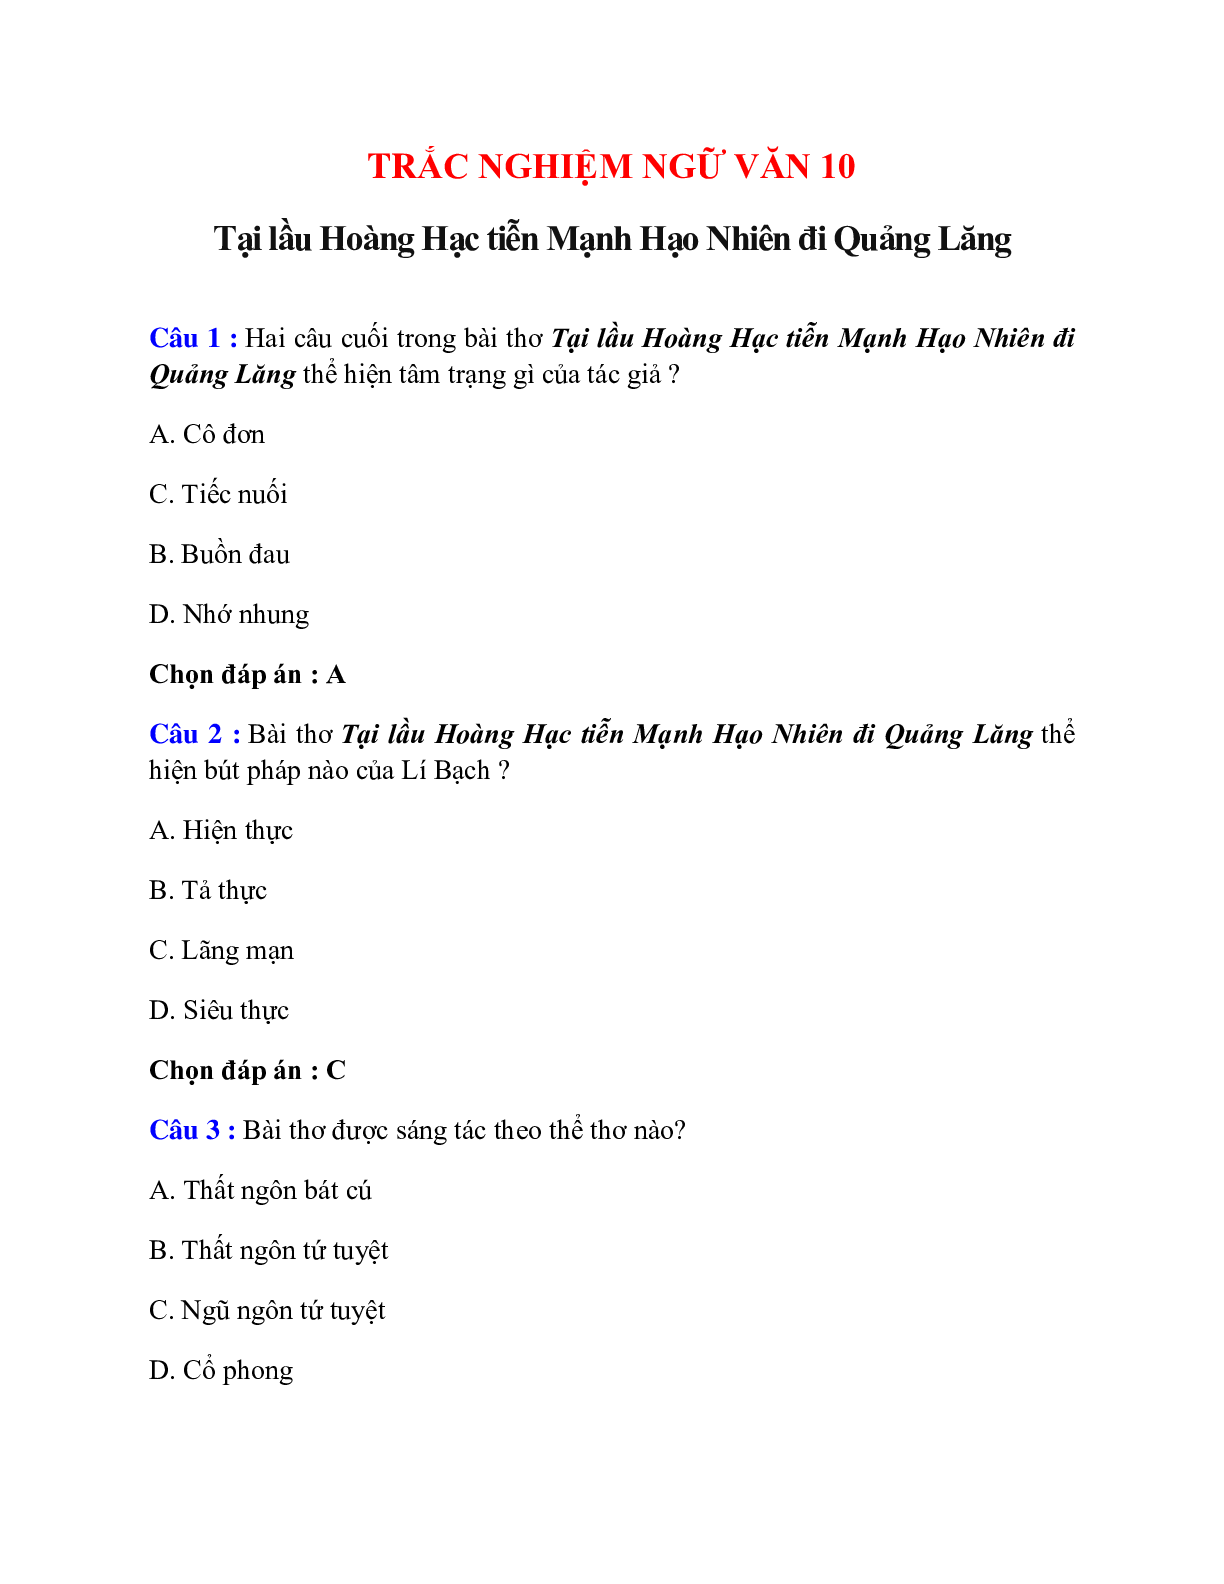 Trắc nghiệm Tại lầu Hoàng Hạc tiễn Mạnh Hạo Nhiên đi Quảng Lăng có đáp án – Ngữ văn lớp 10 (trang 1)